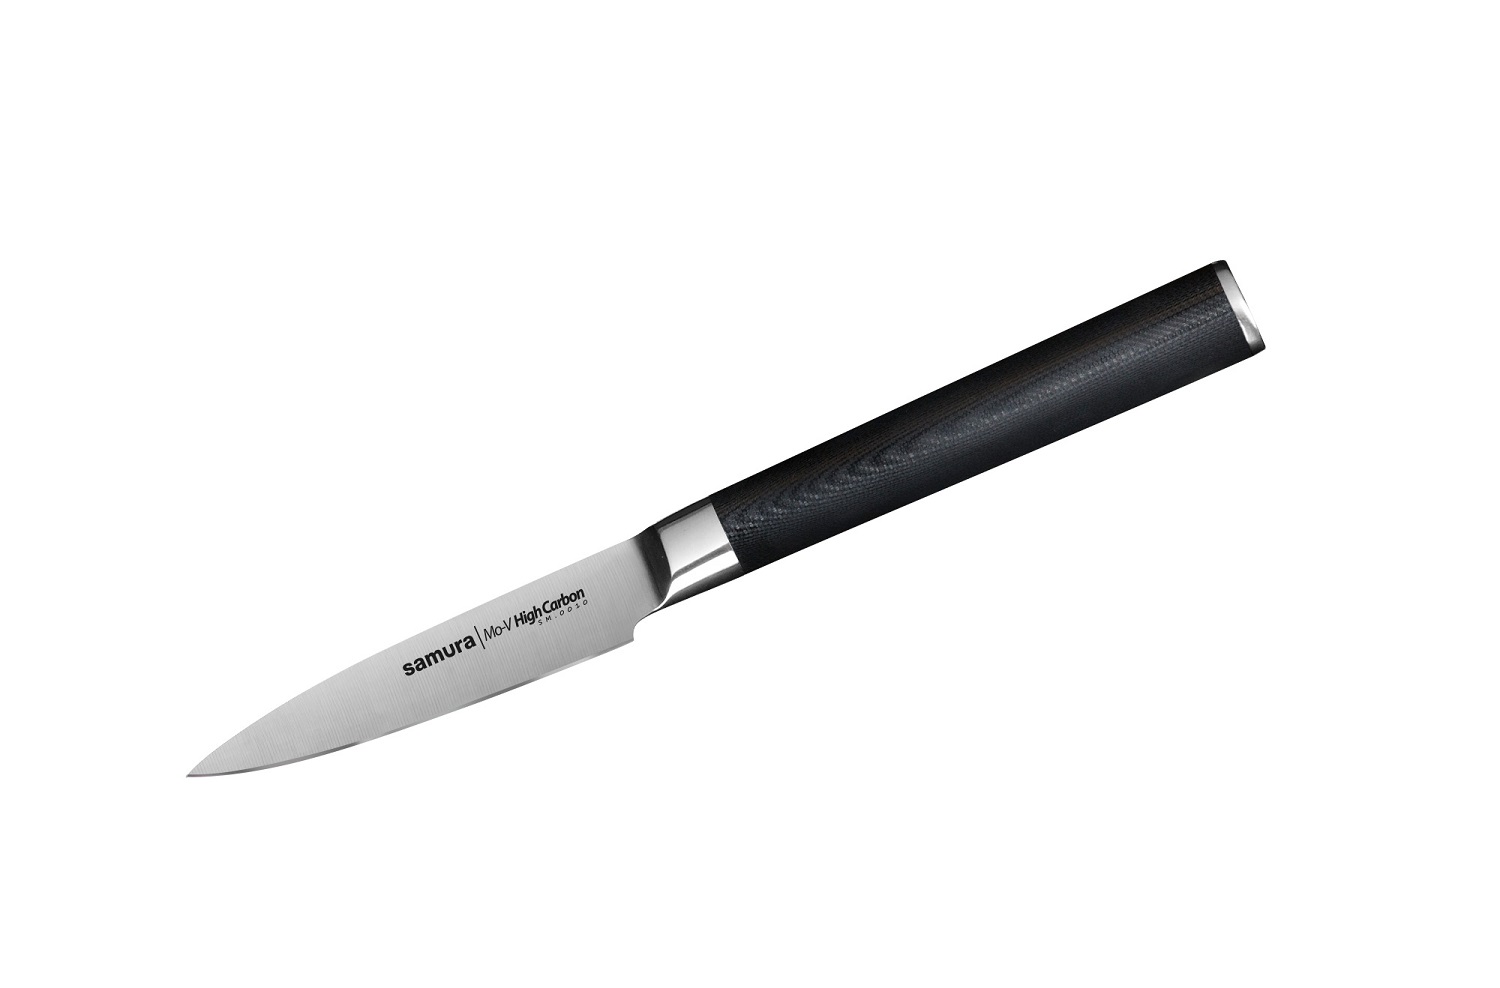 Нож Samura овощной Mo-V, 9 см, G-10 нож накири mo v 16 7 см sm 0043 k samura